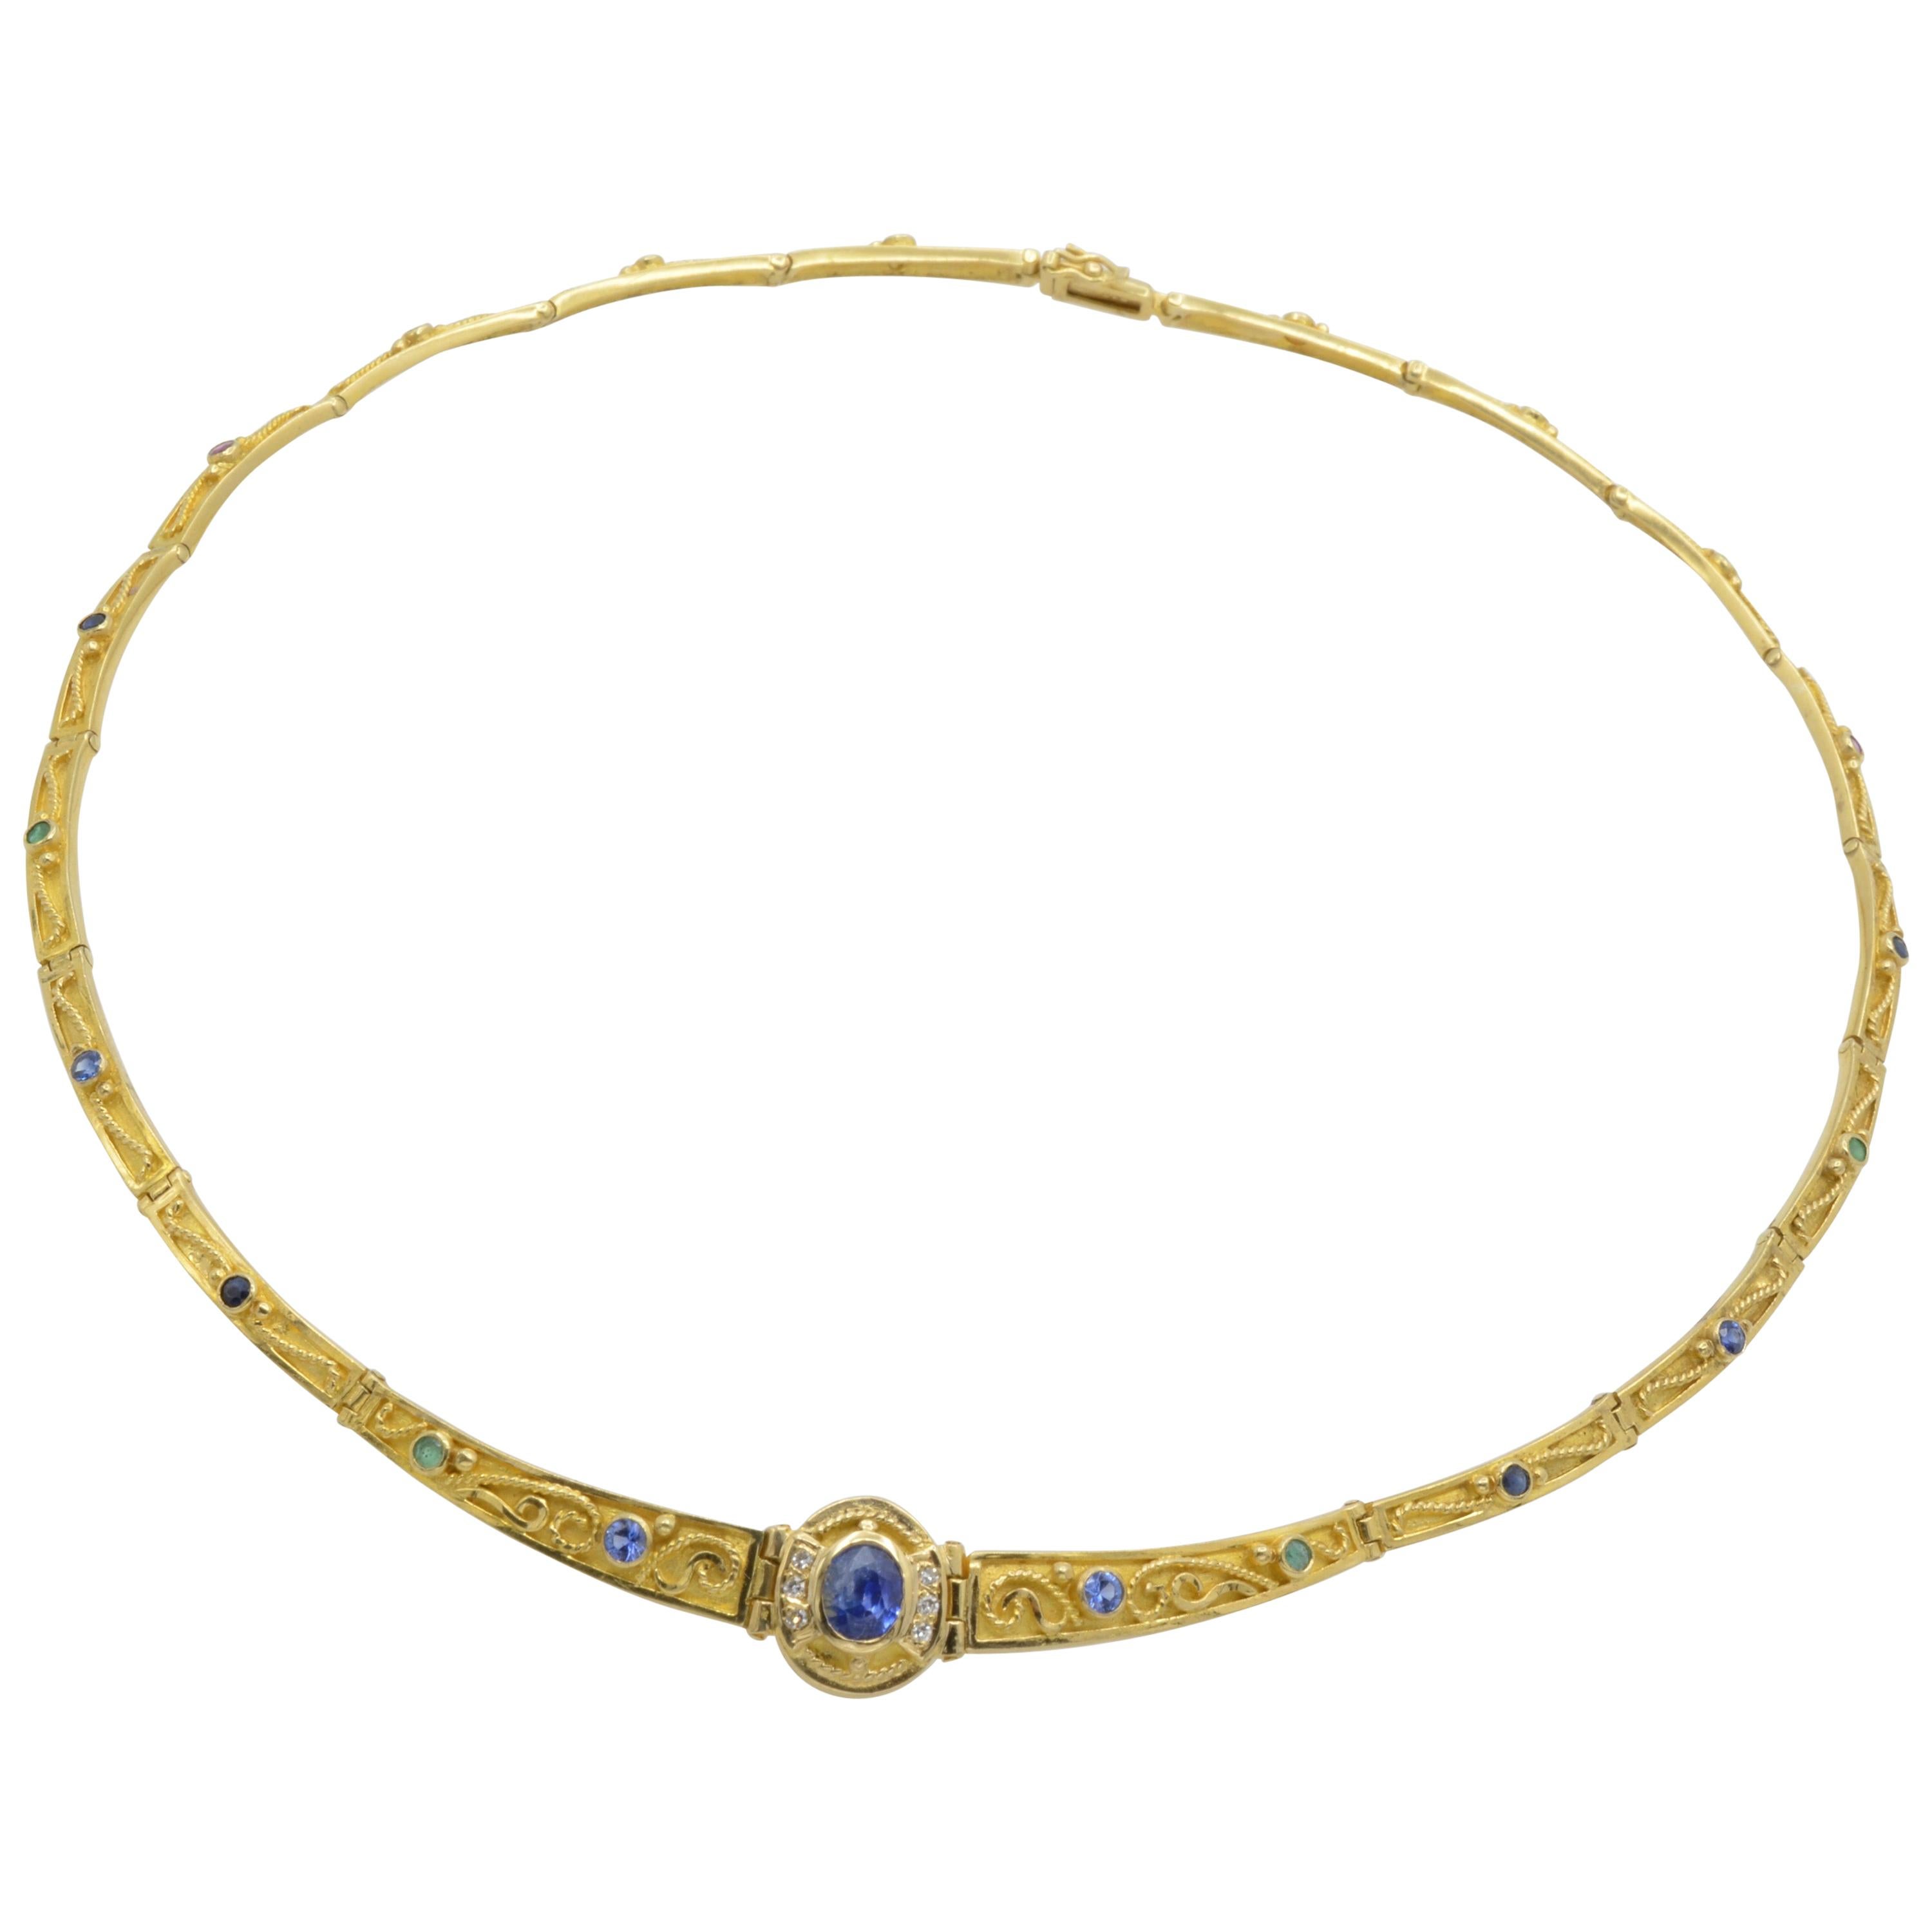 Halskette aus Gold mit griechischem Kragen 18K und Saphiren und beweglichen Gliedern